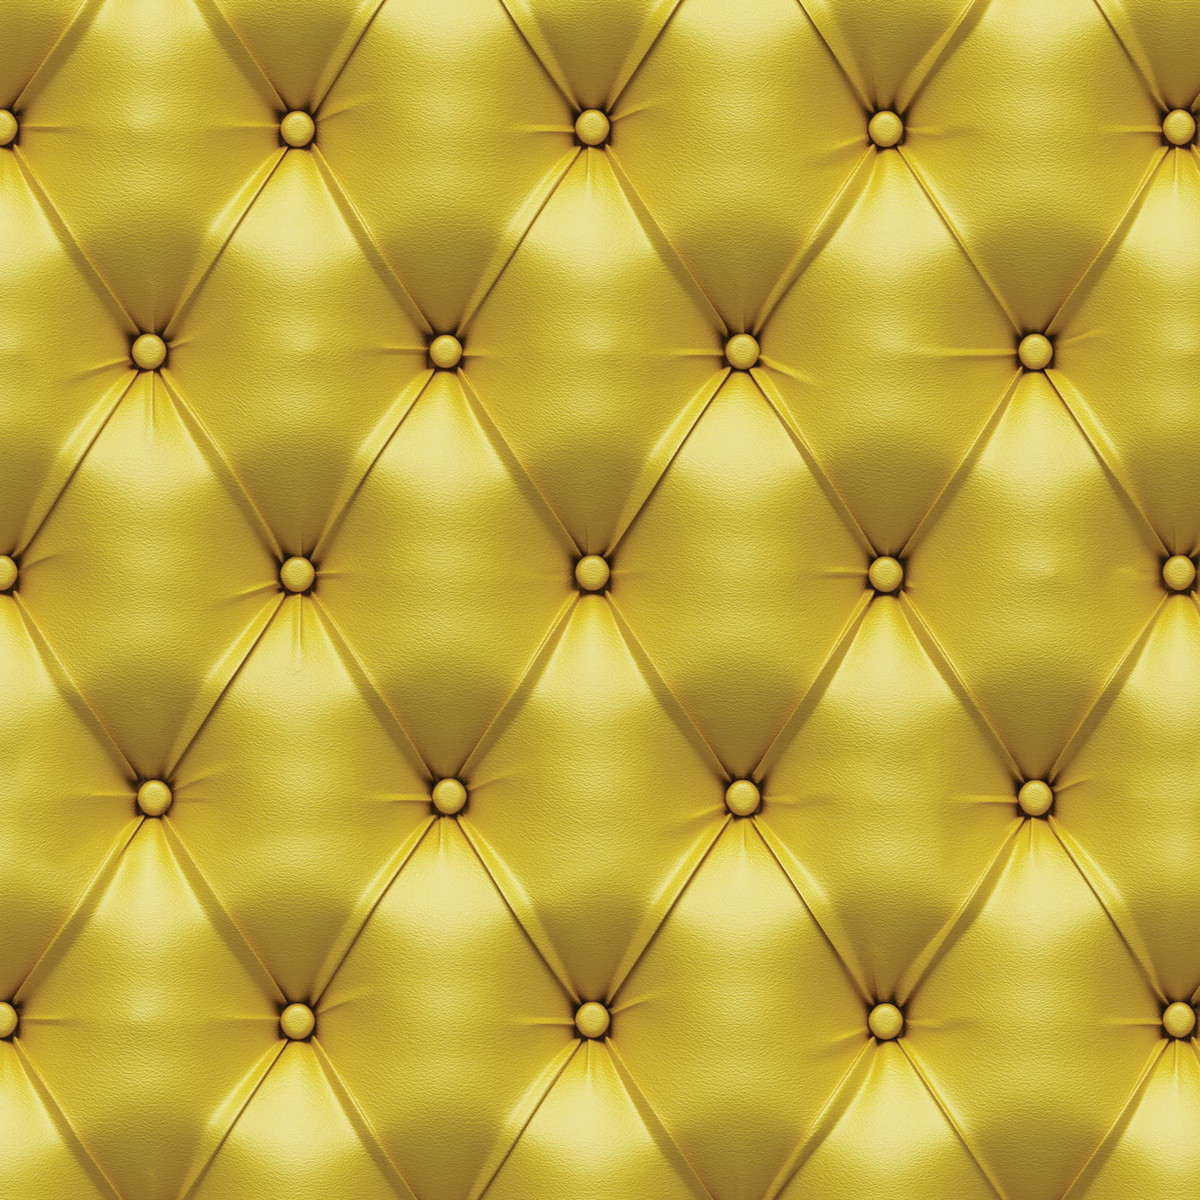 wallpaper dourado,yellow,pattern,ceiling,light,gold